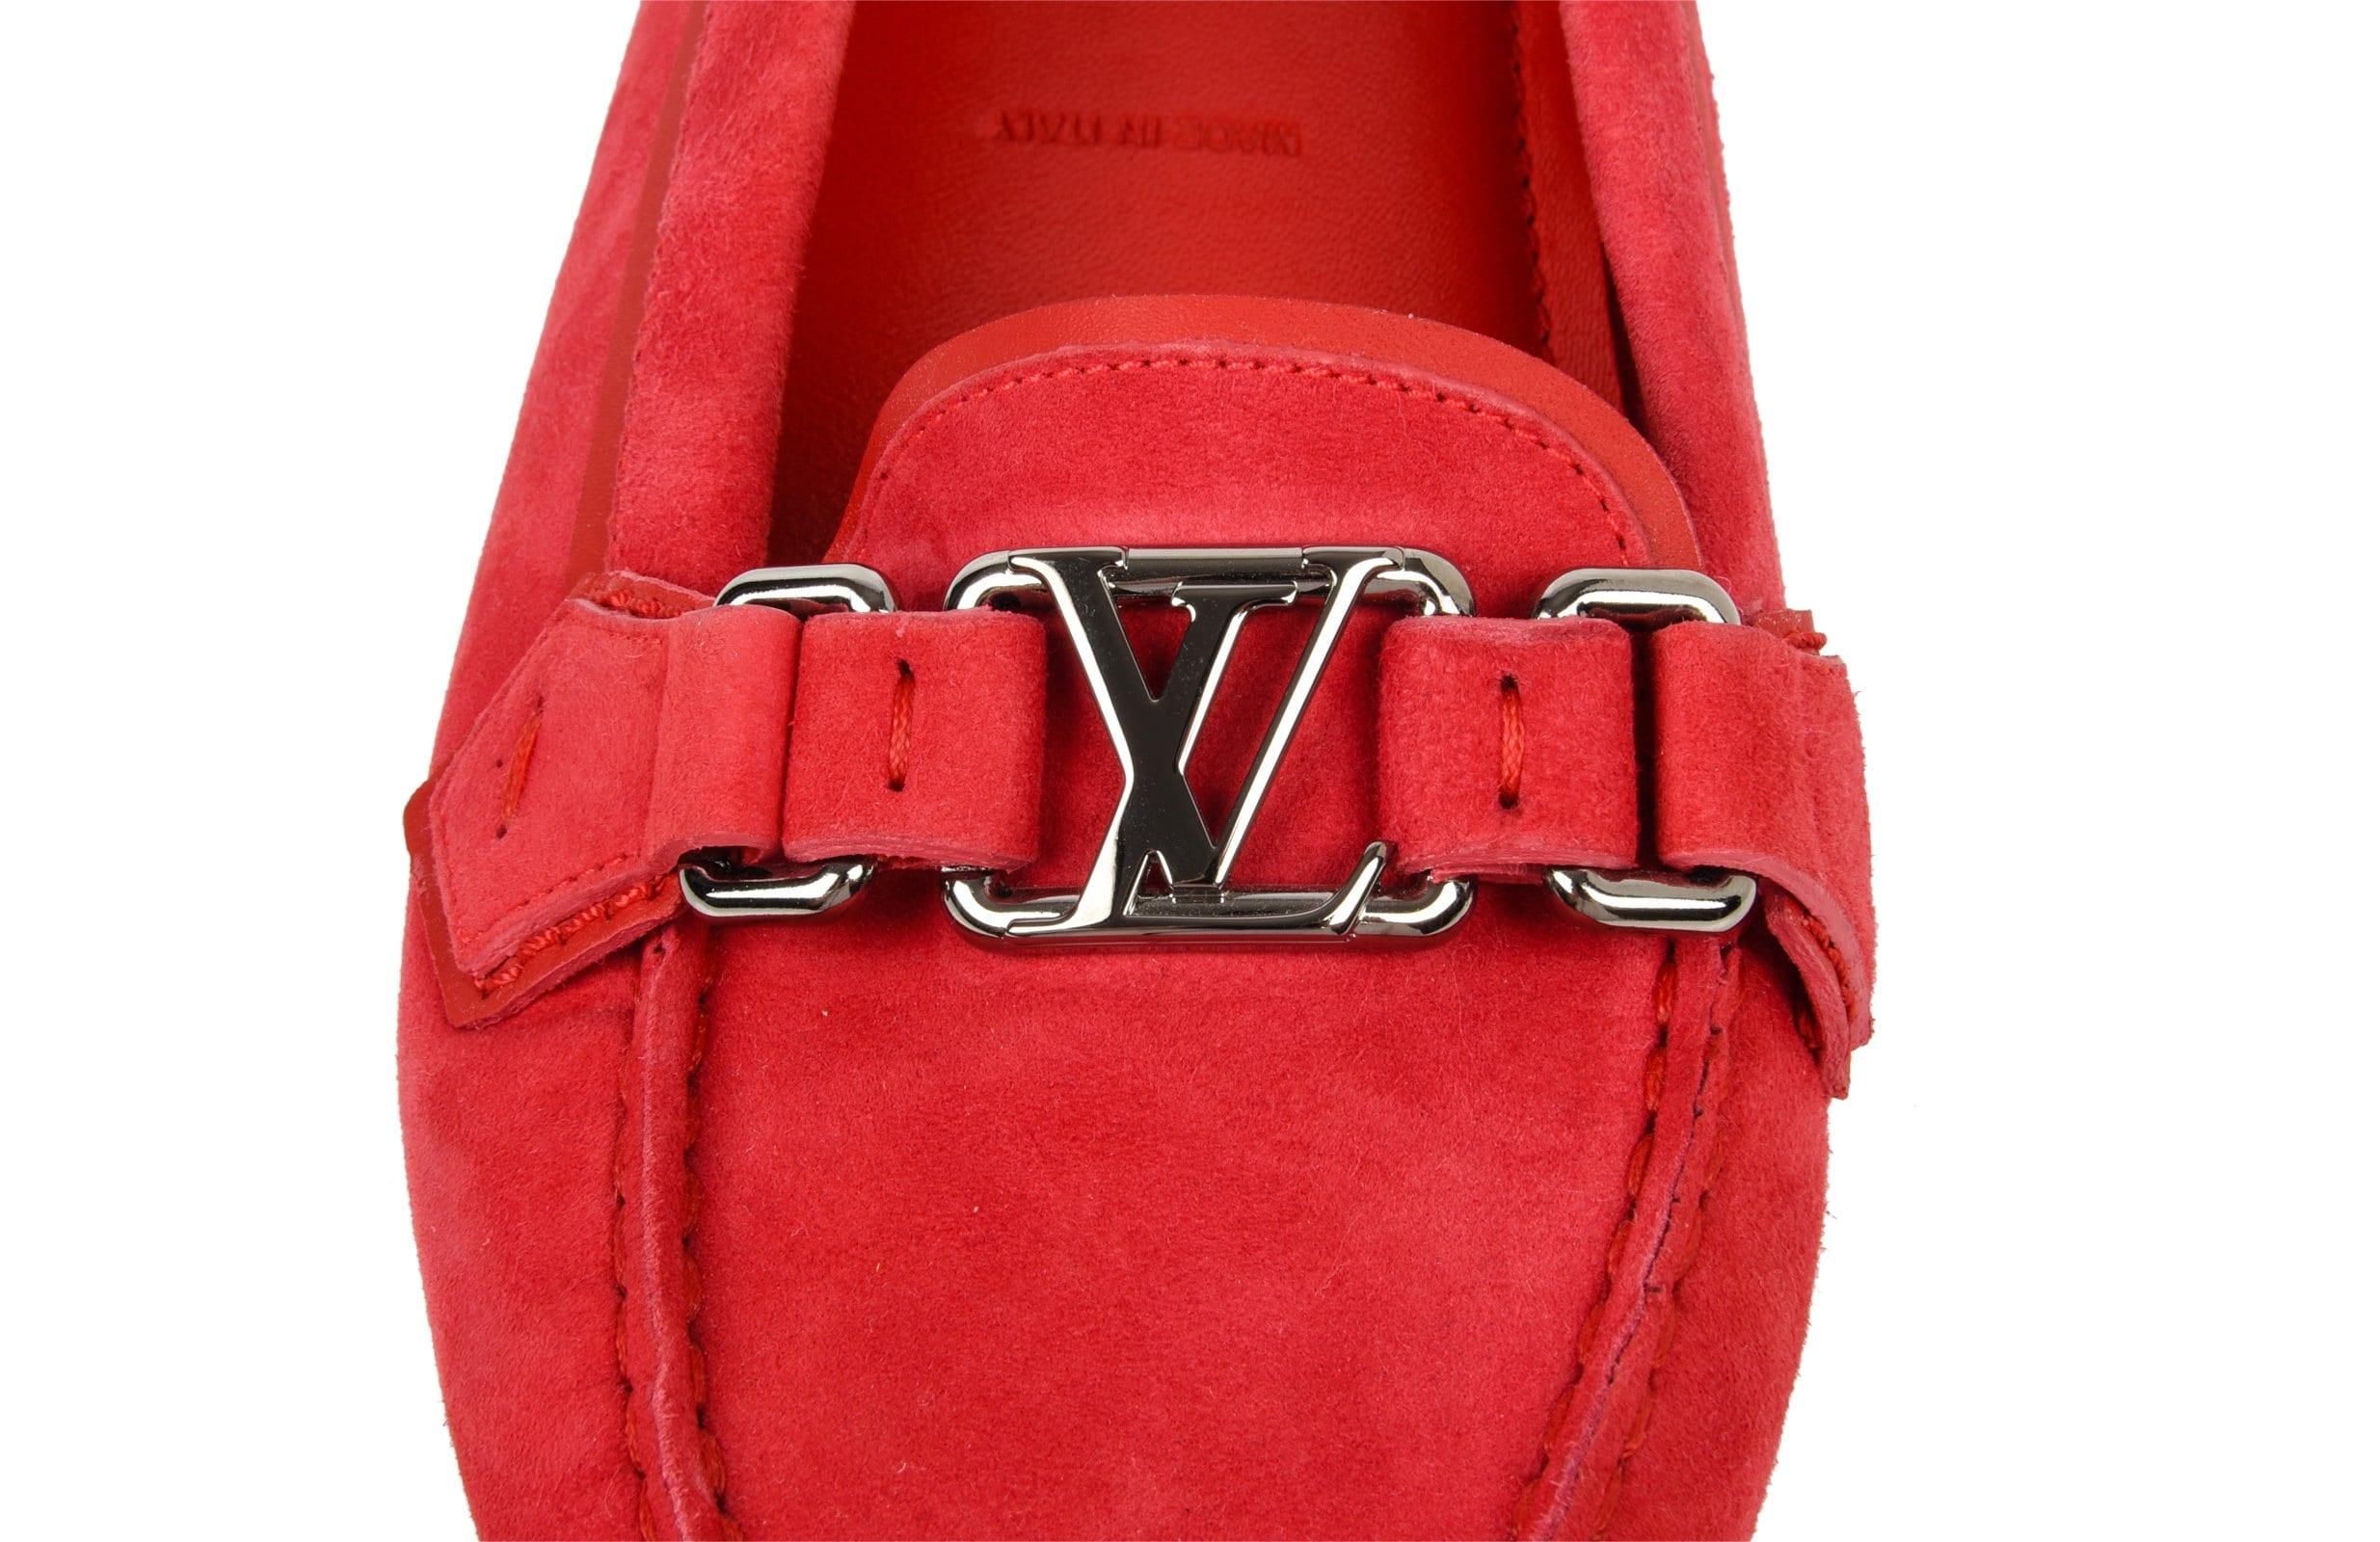 Louis Vuitton Shoes for Men for sale